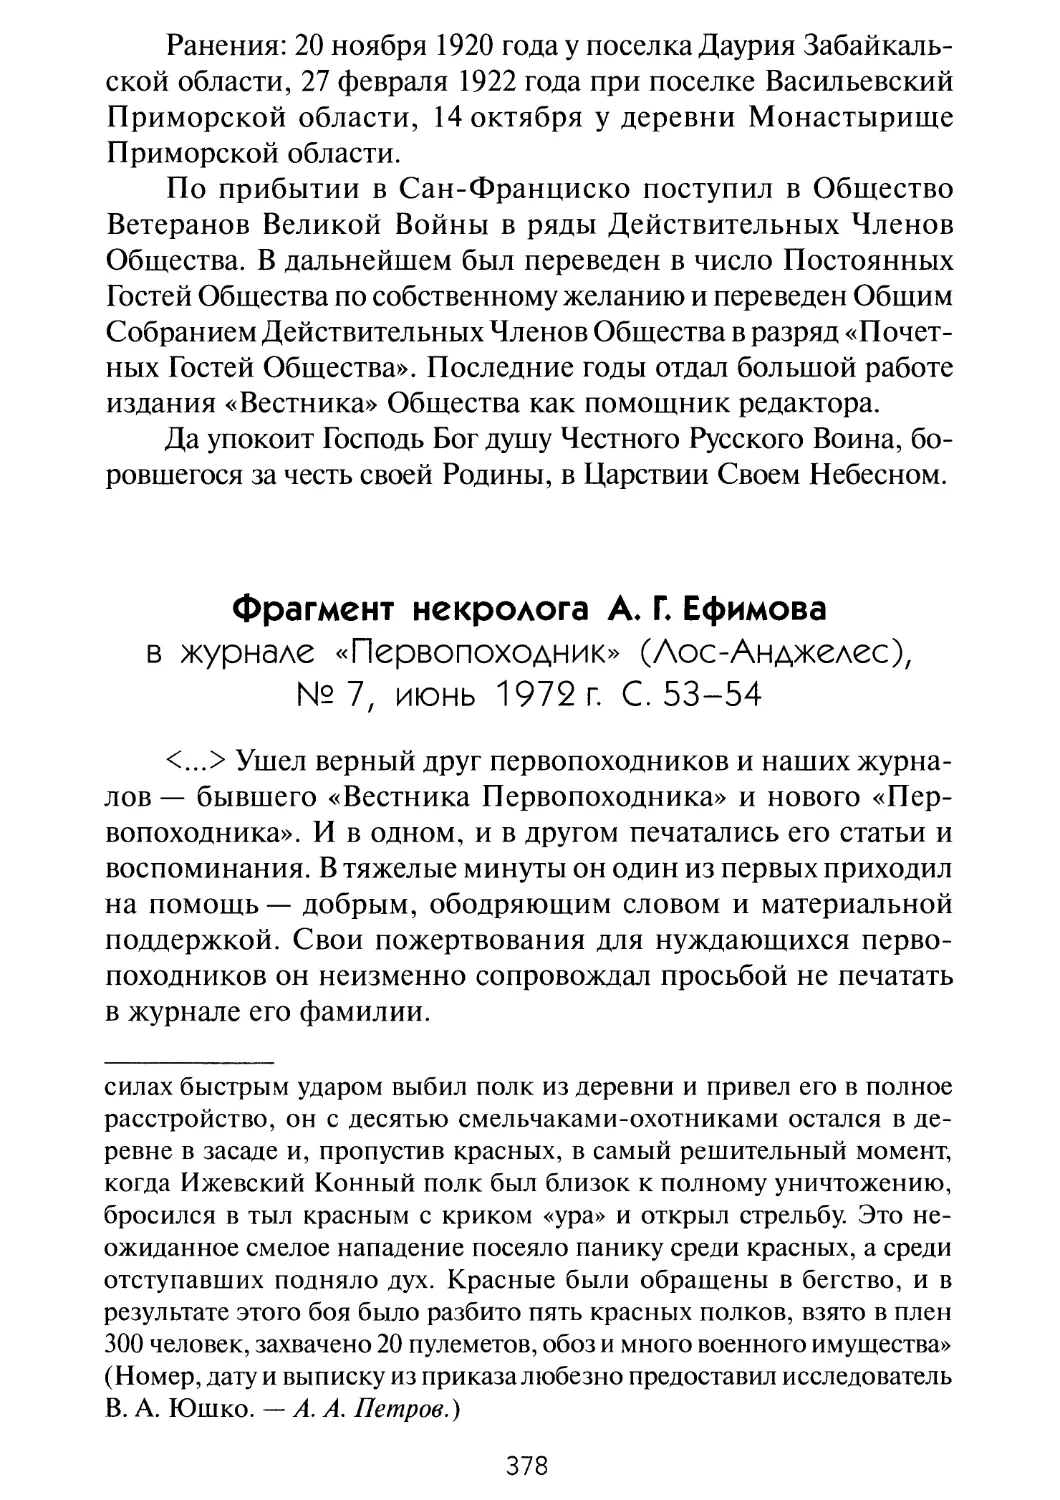 Фрагмент некролога А. Г. Ефимова в журнале «Первопоходник»